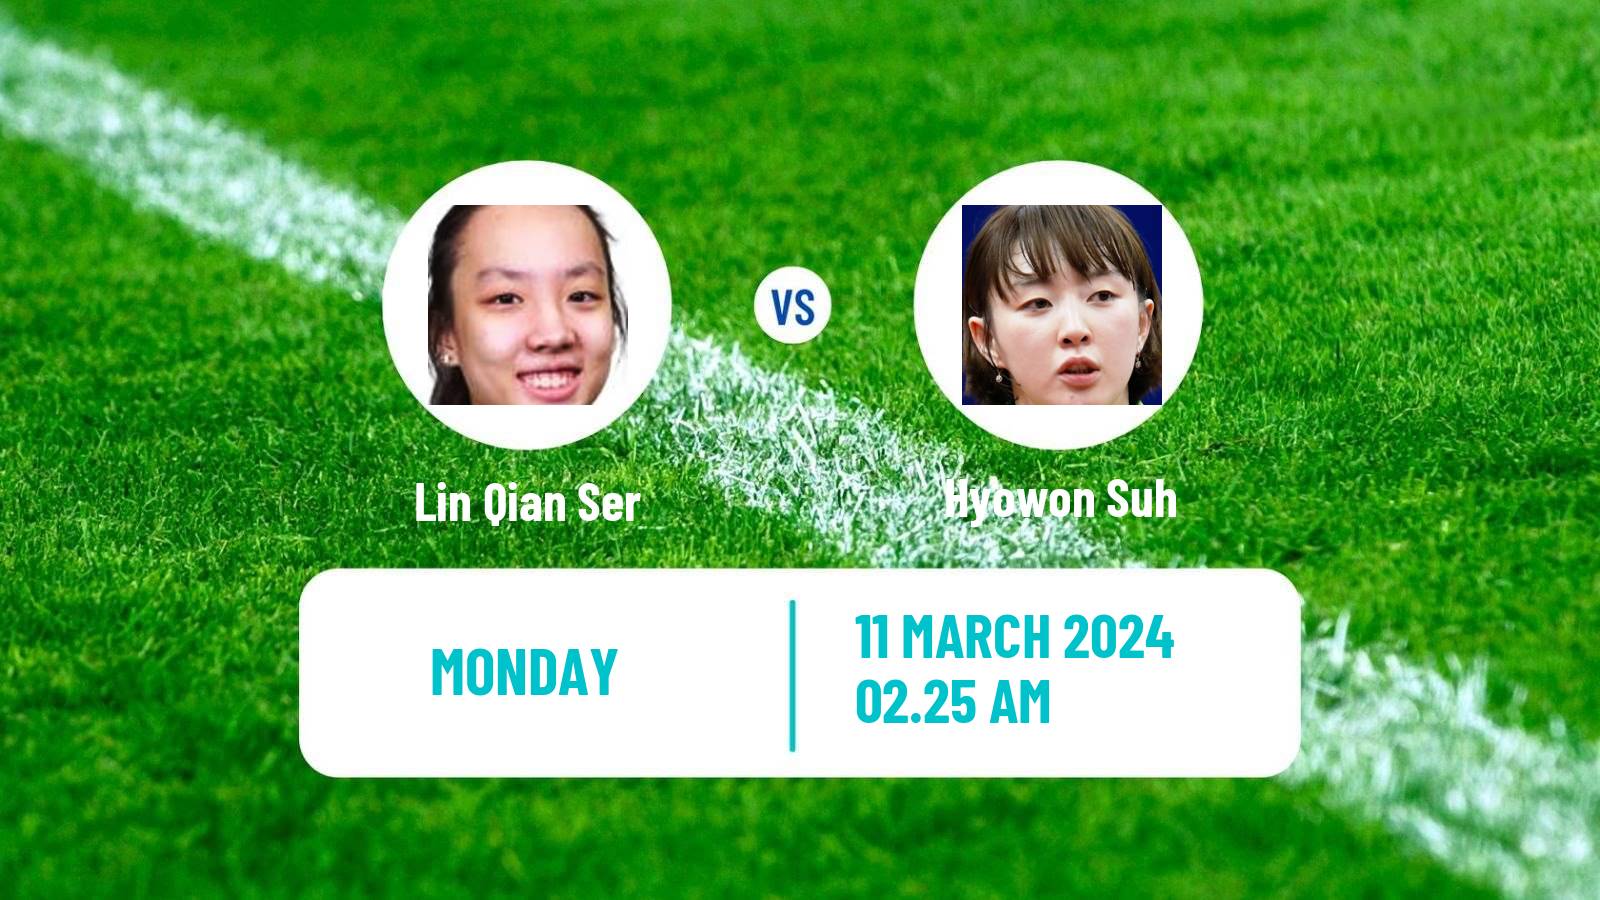 Table tennis Singapore Smash Women Lin Qian Ser - Hyowon Suh